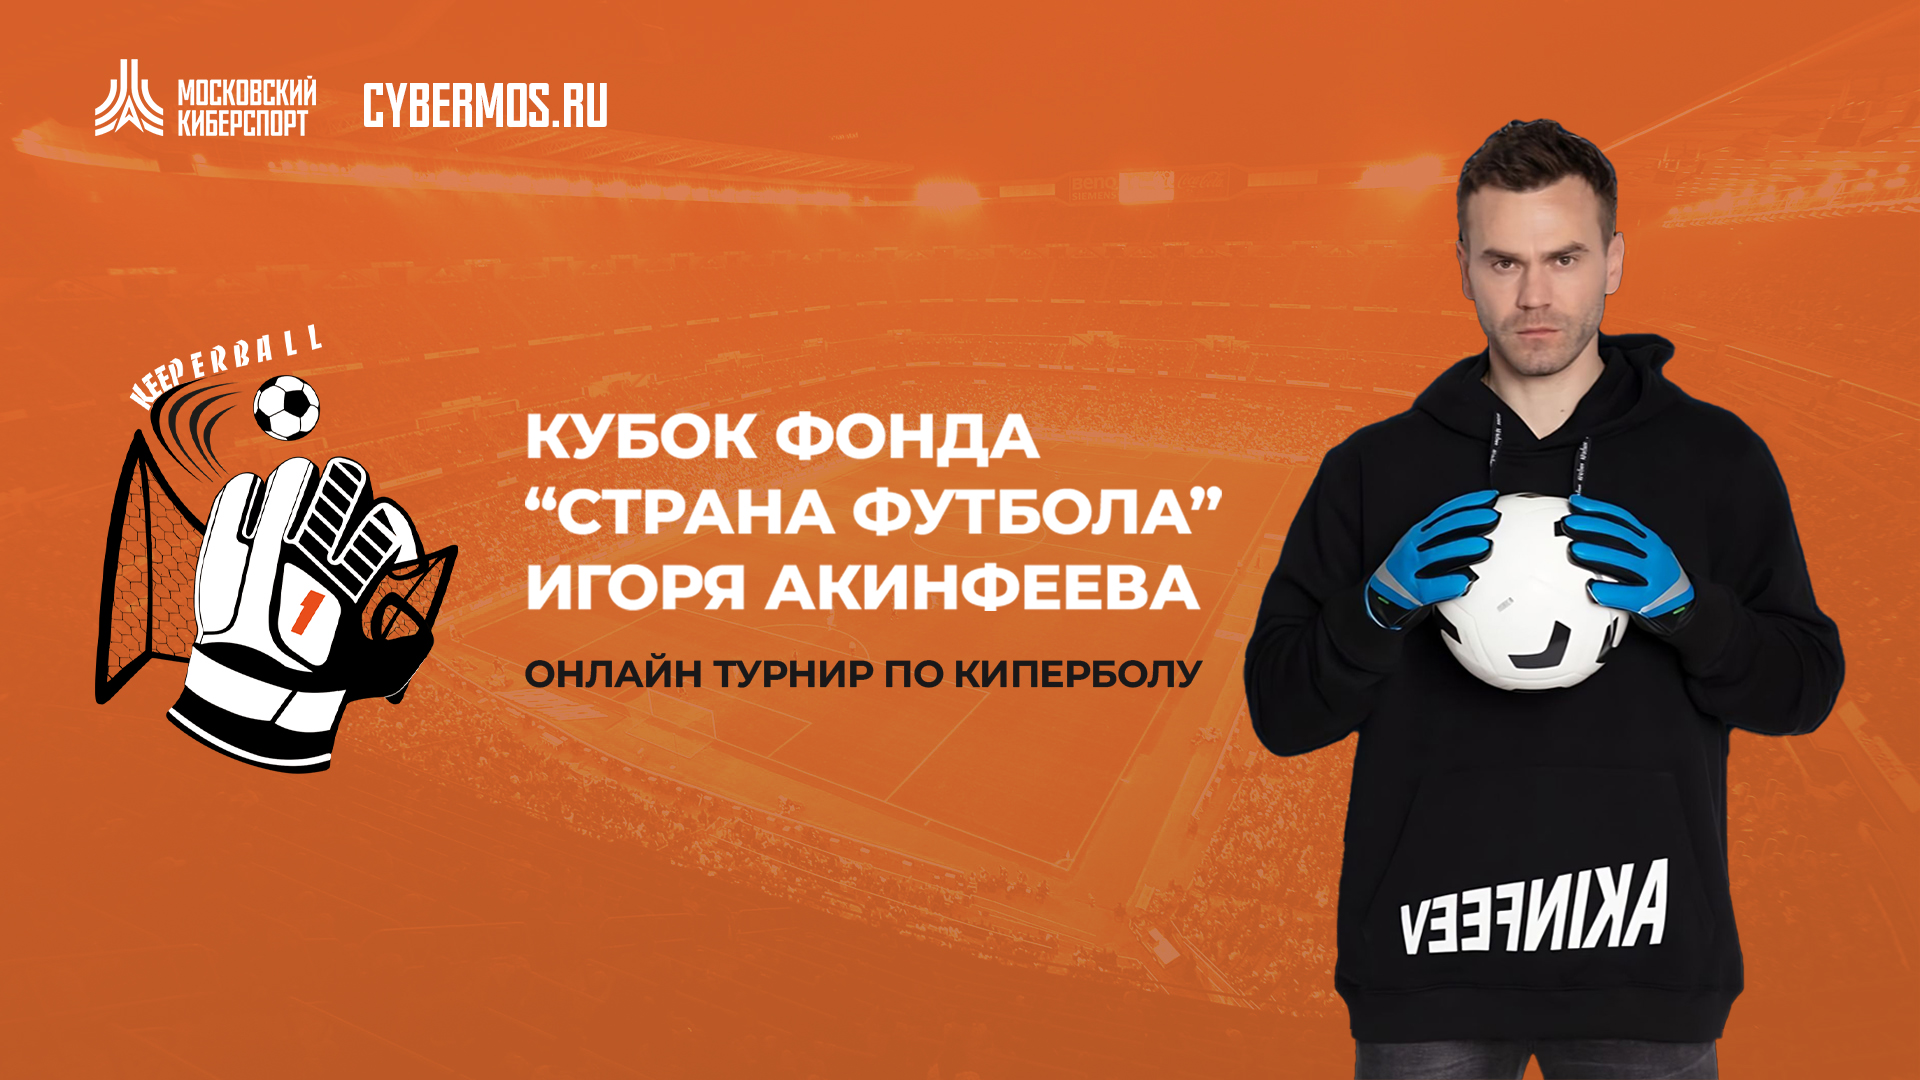 Фонд Игоря Акинфеева проведет заключительные турниры по киперболу в рамках «Московского Киберспорта»